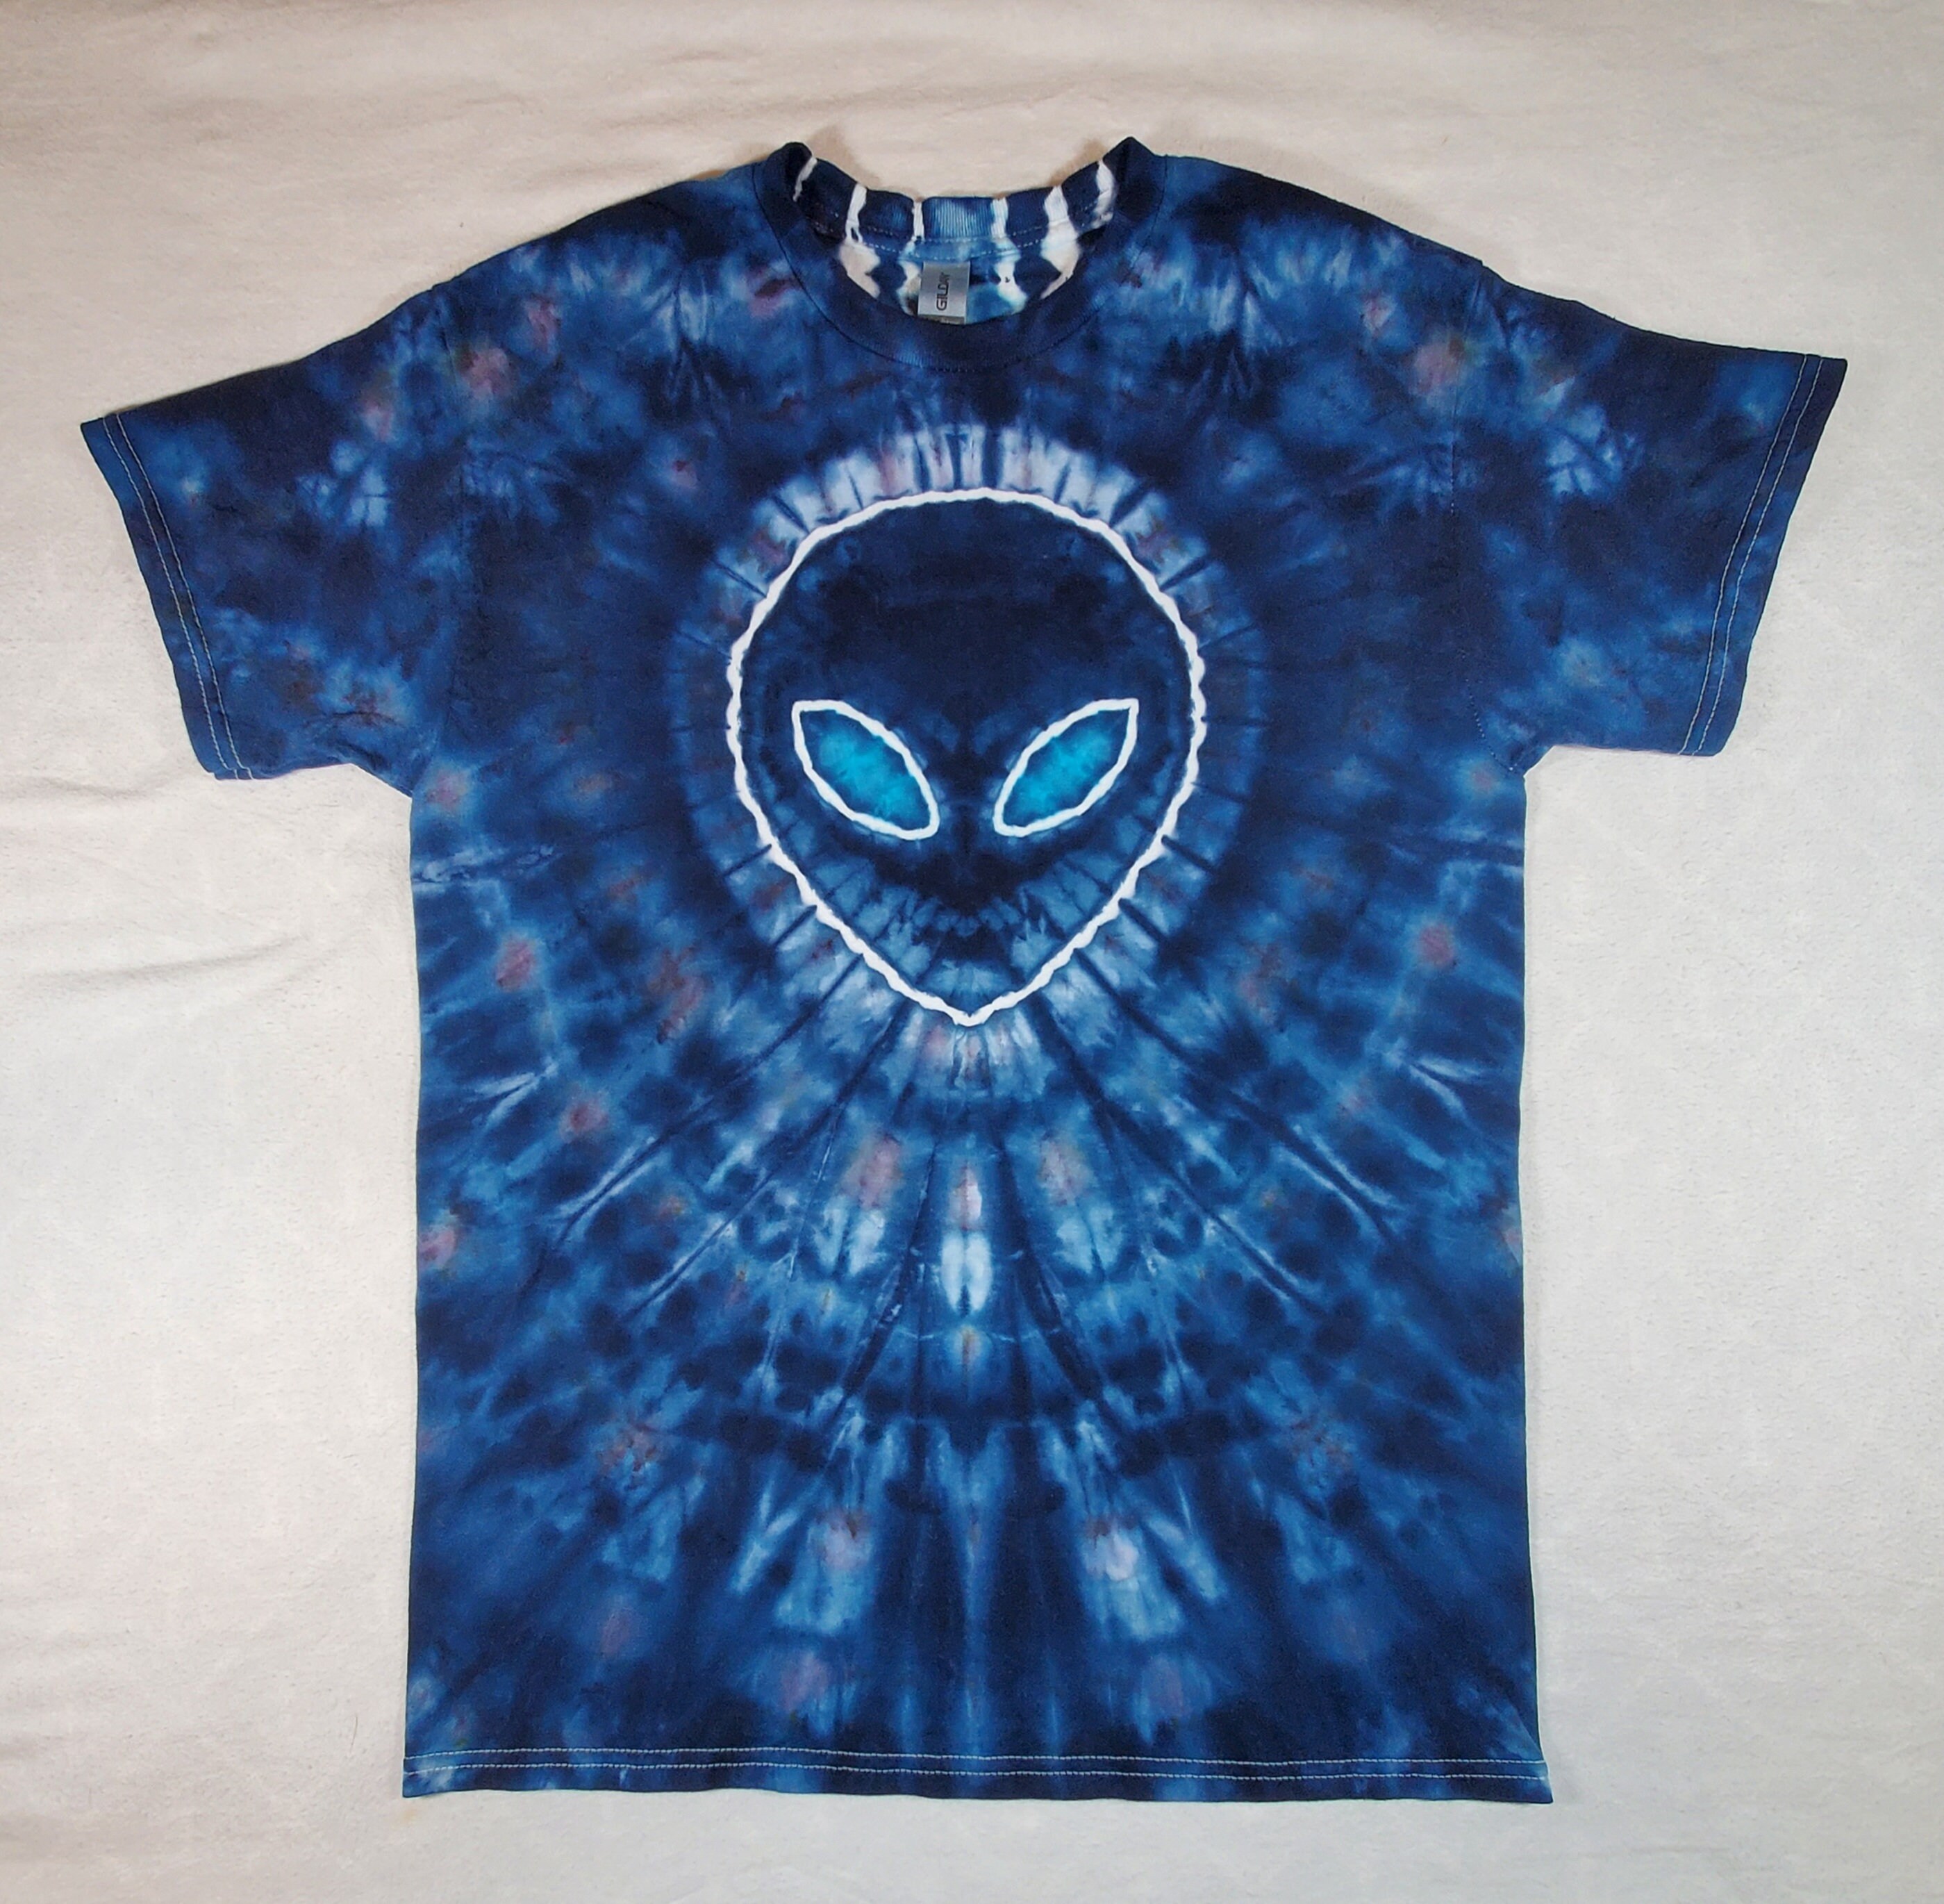 Alien Ice Dye Tie Dye T-shirt With on Back - Etsy